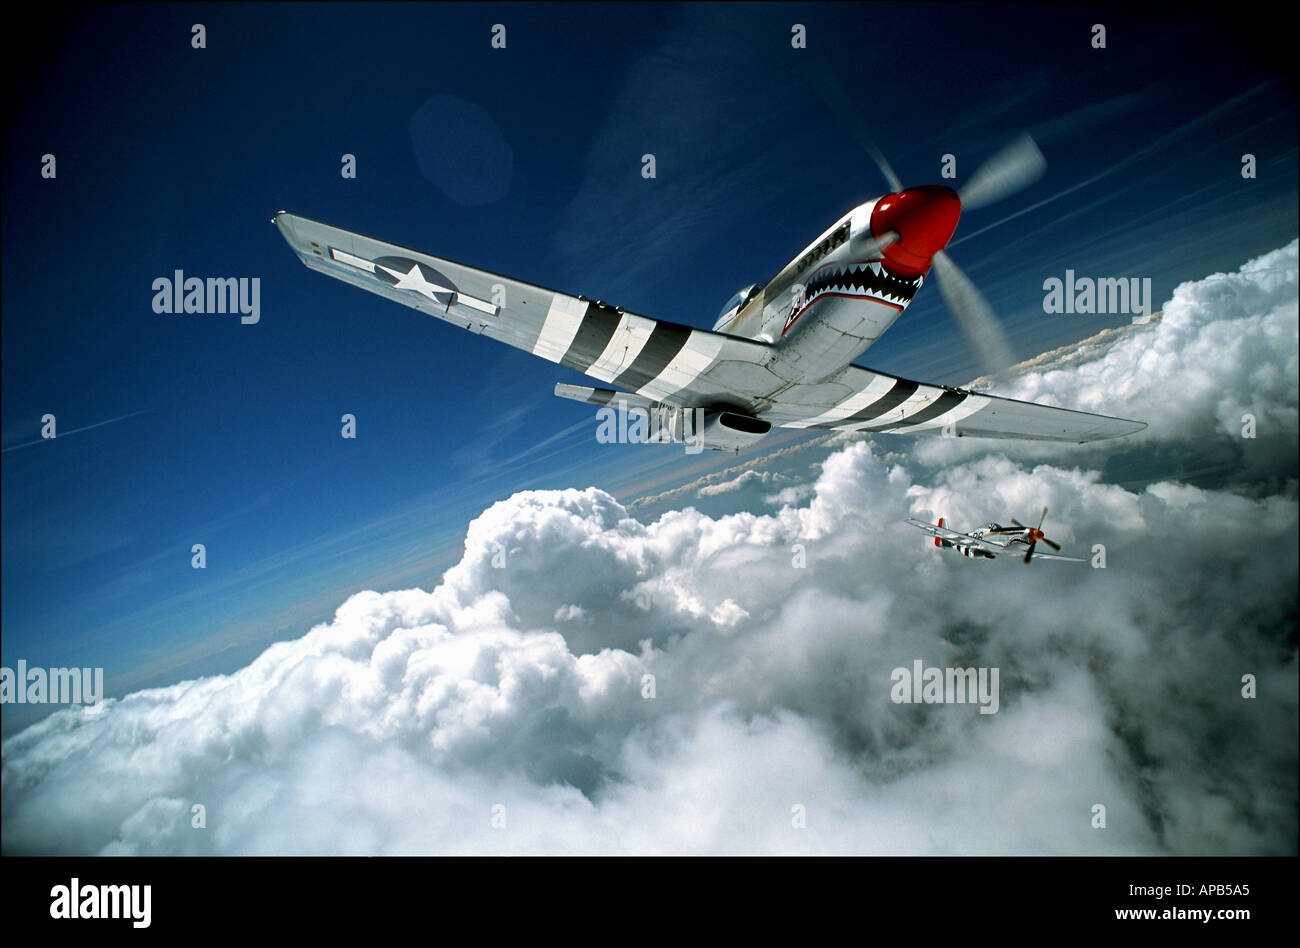 P51 Mustang aircraft Stock Photo